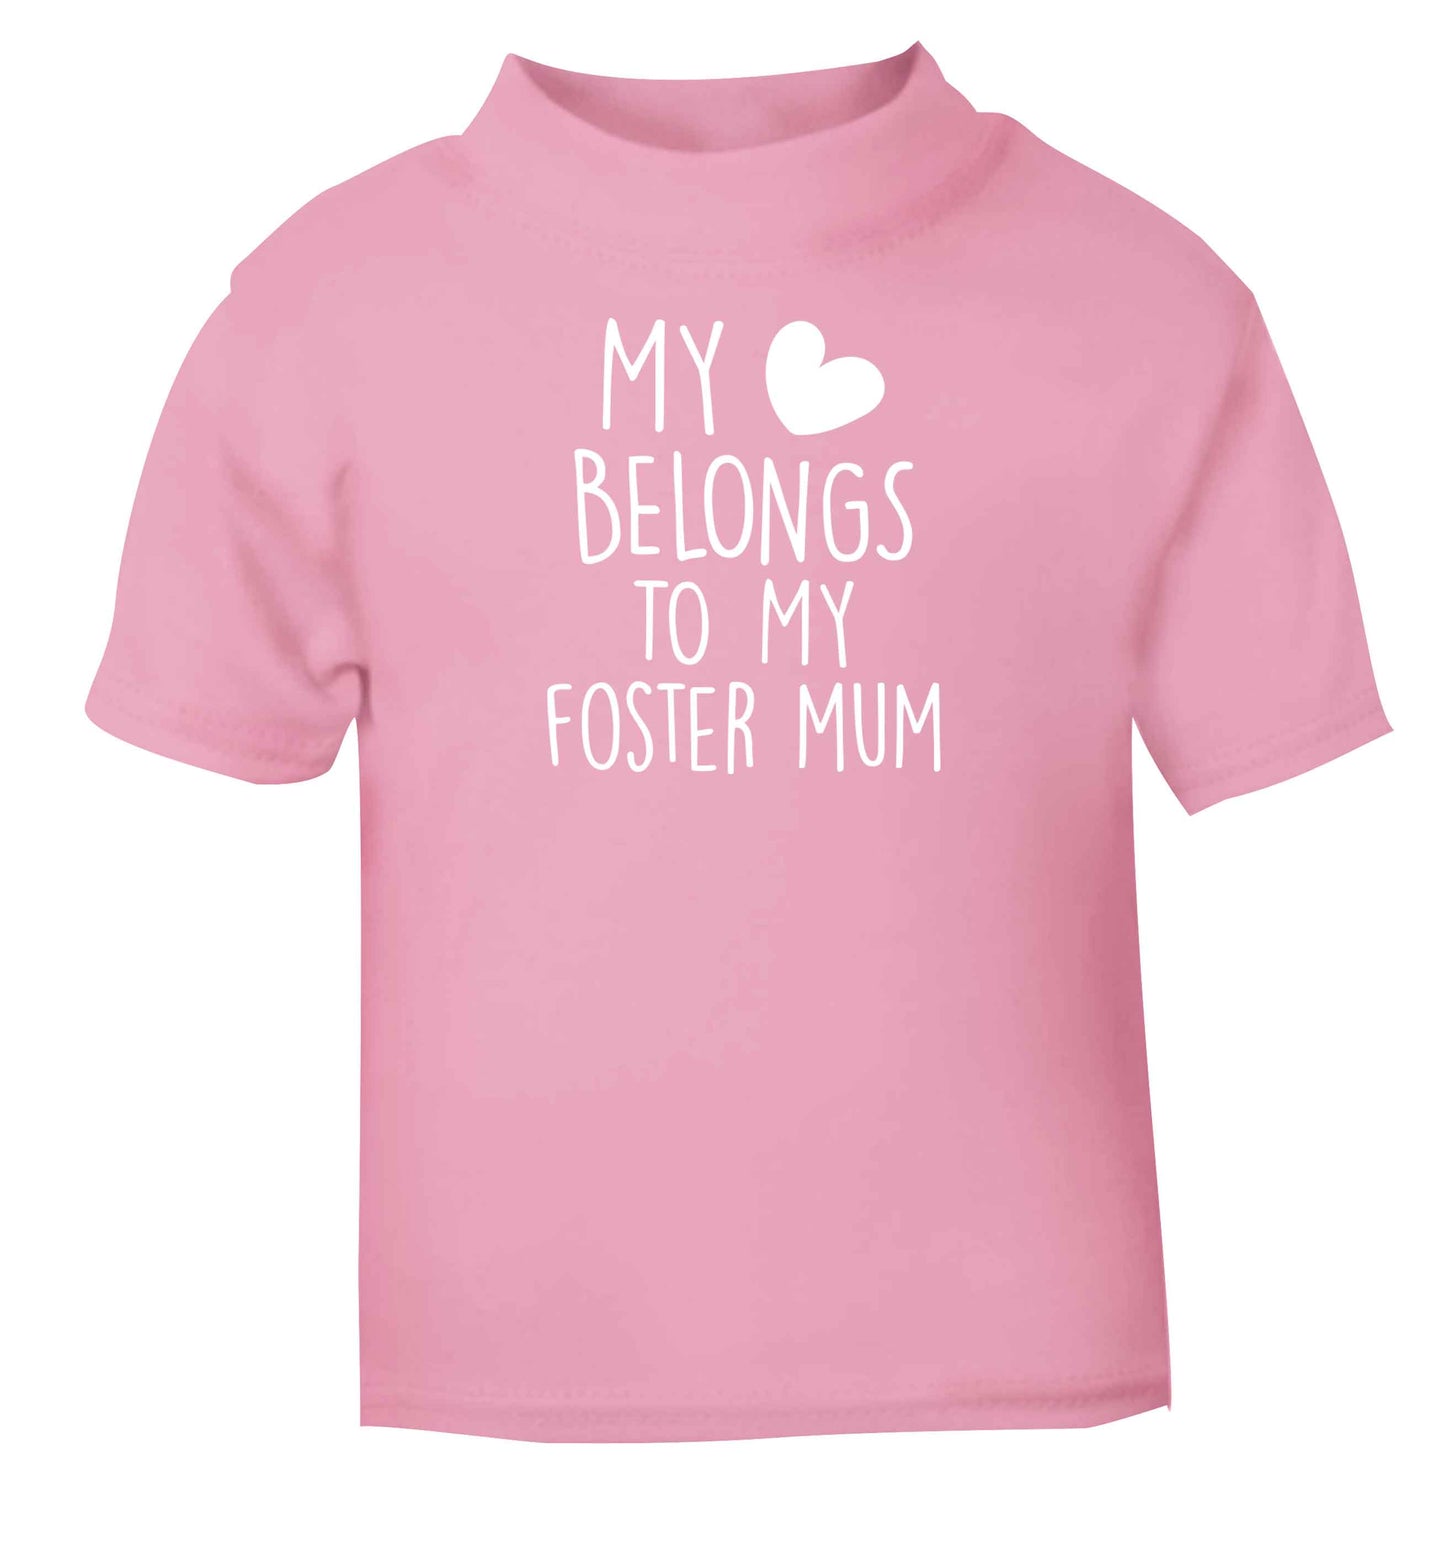 My heart belongs to my foster mum Children's light pink Tshirt 12-13 Years